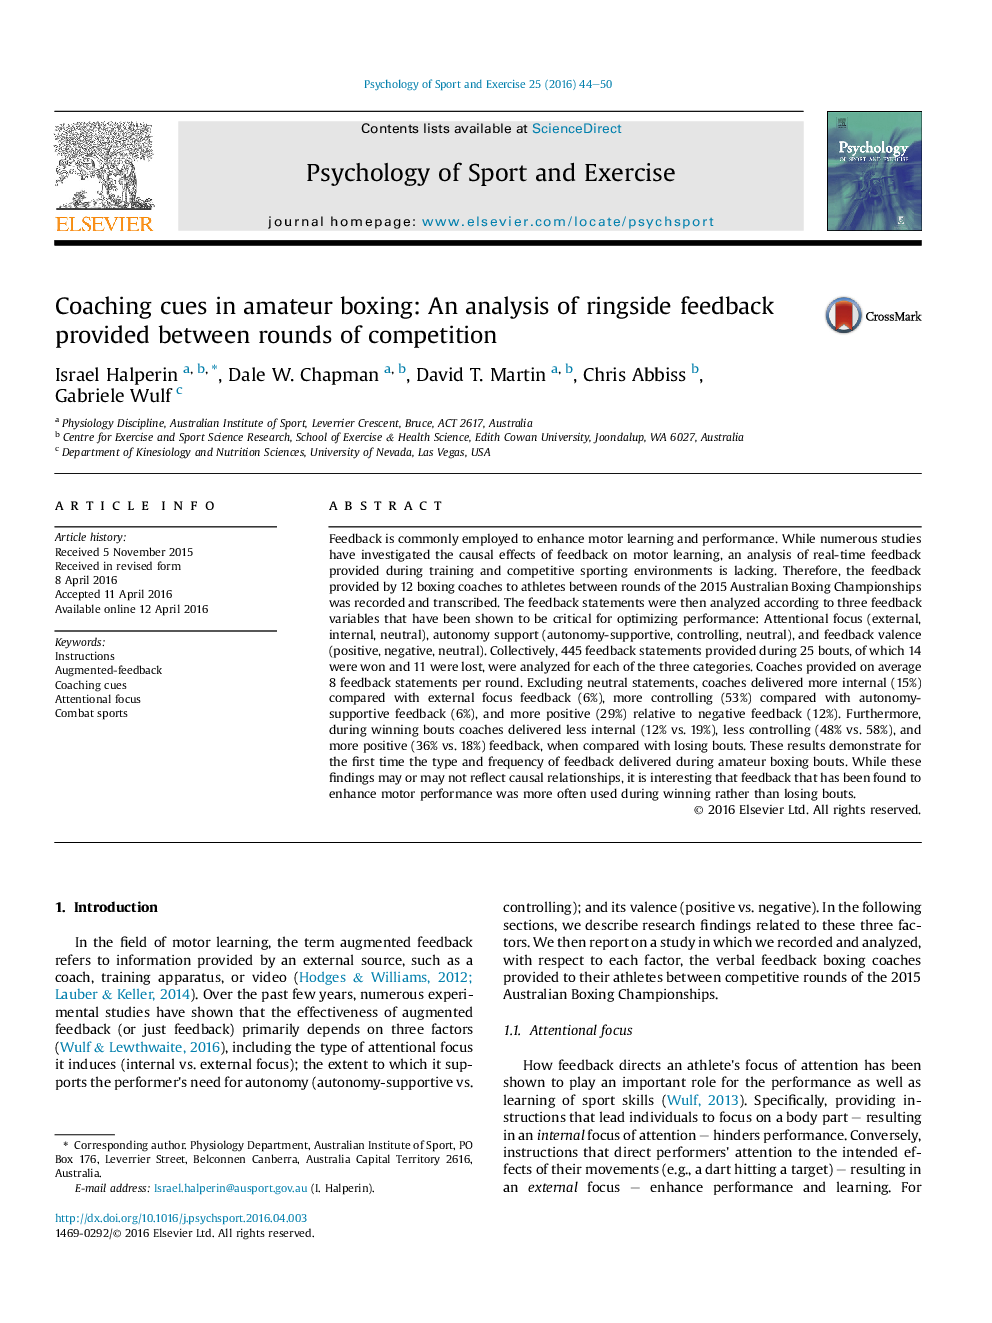 راهنمایی مربیگری در بوکس آماتور: تجزیه و تحلیل از بازخورد کنار رینگ بدست آمده از راند های رقابت های مختلف